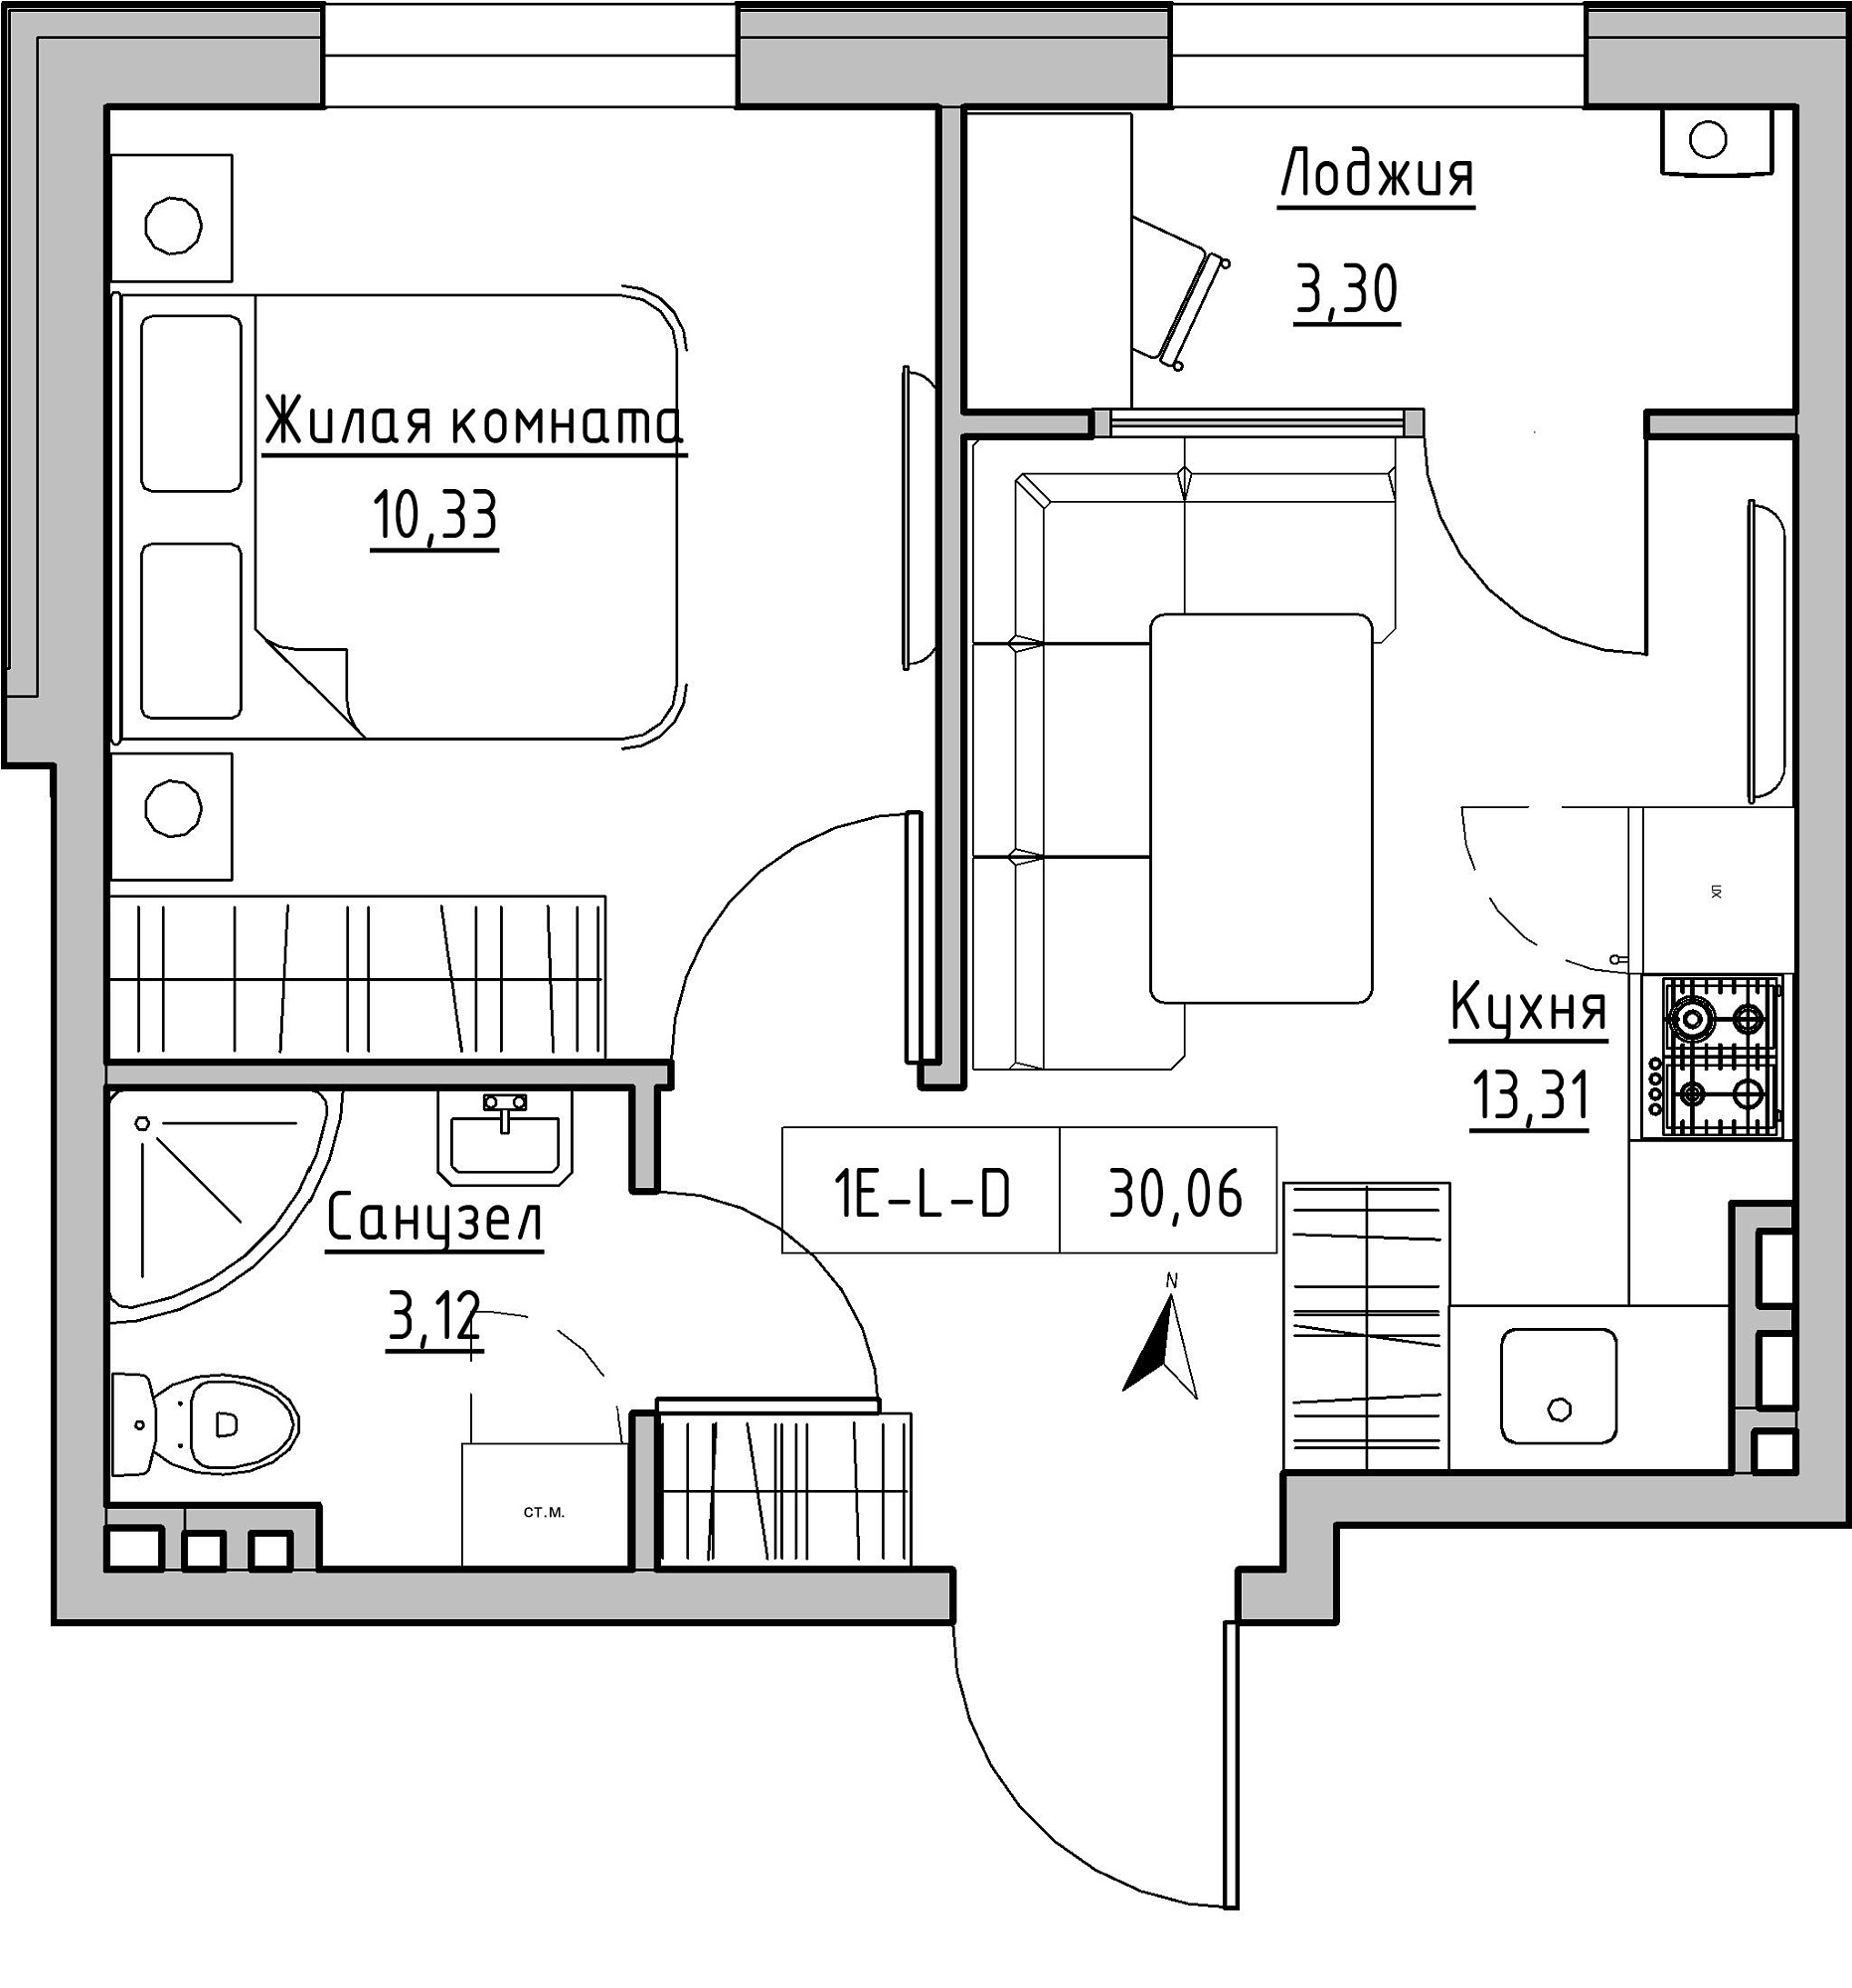 Планування 1-к квартира площею 30.06м2, KS-024-02/0001.